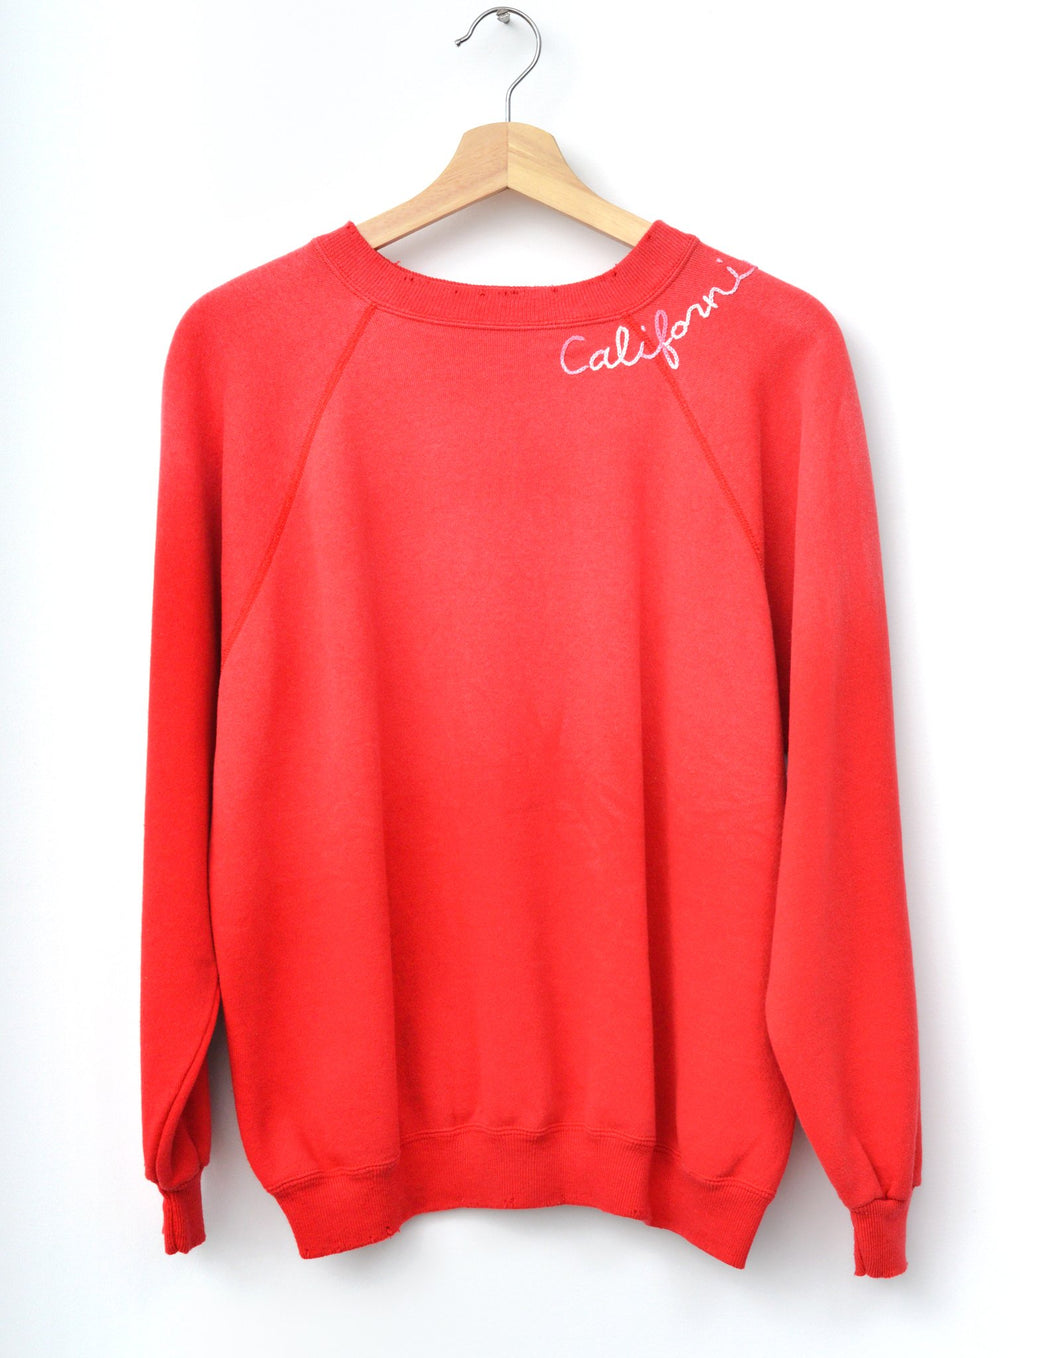 California Rainbow Sweatshirt - Red